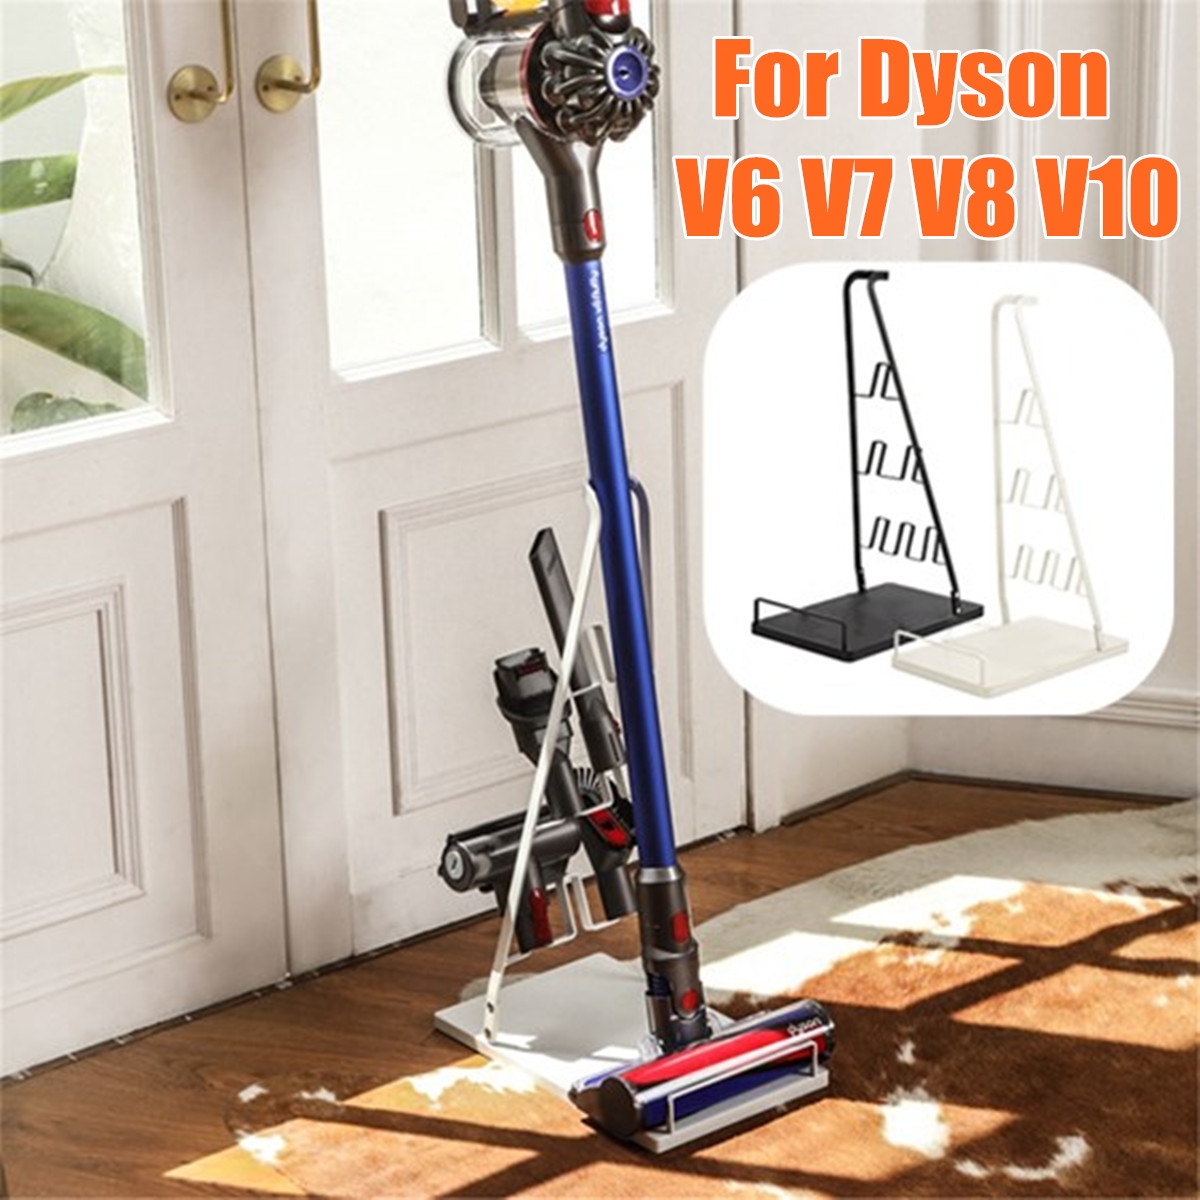 Vacuum-Cleaner-Storage-Stand-Rack-Bracket-Holder-For-Dyson-V6-V7-V8-V10-Model-1587254-1